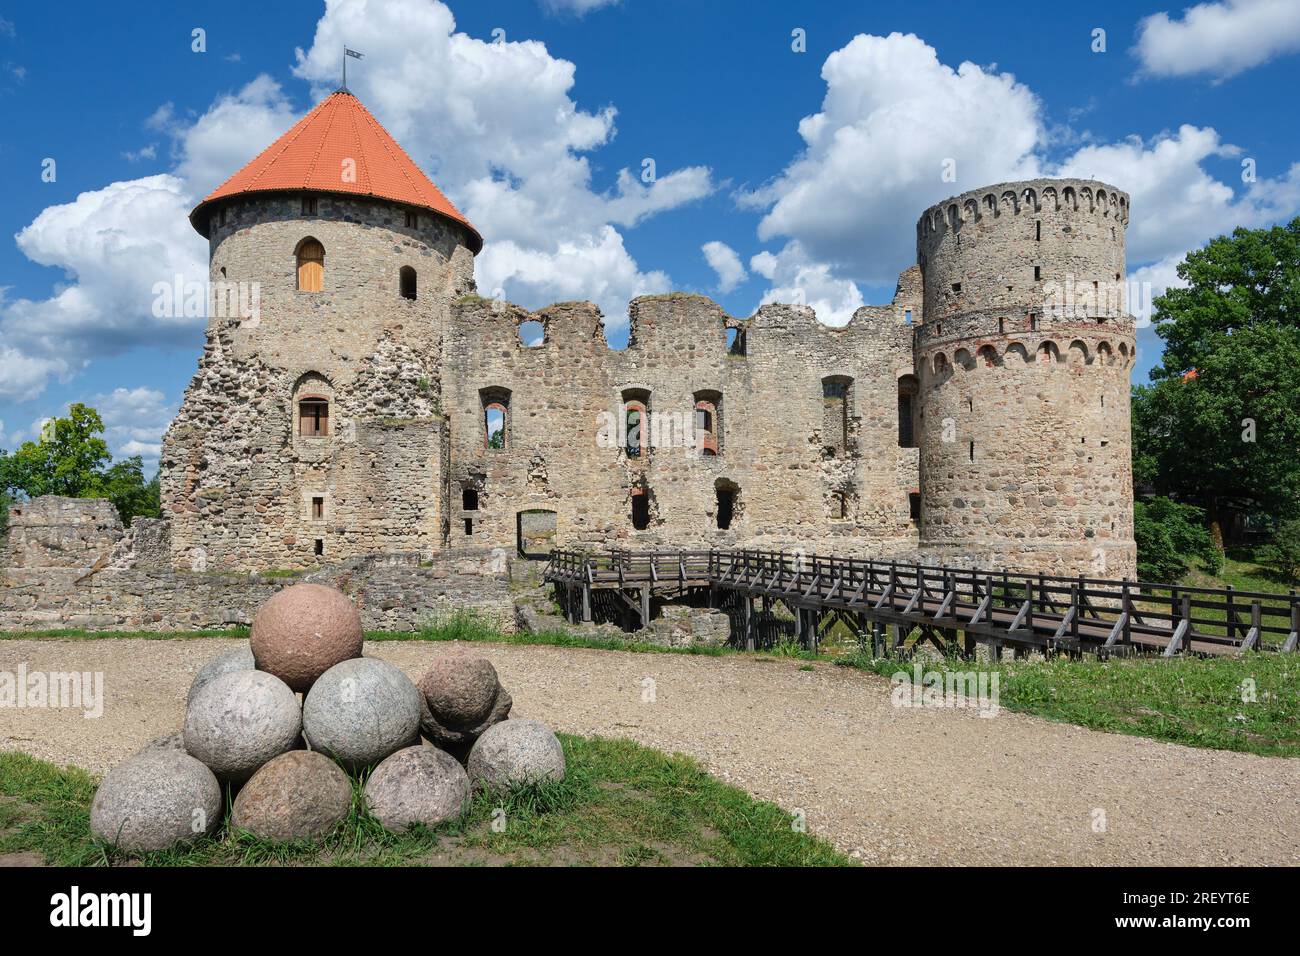 Attraction touristique lettone - ruines du château médiéval, murs en pierre et tours dans la ville de Cesis, Lettonie. Banque D'Images